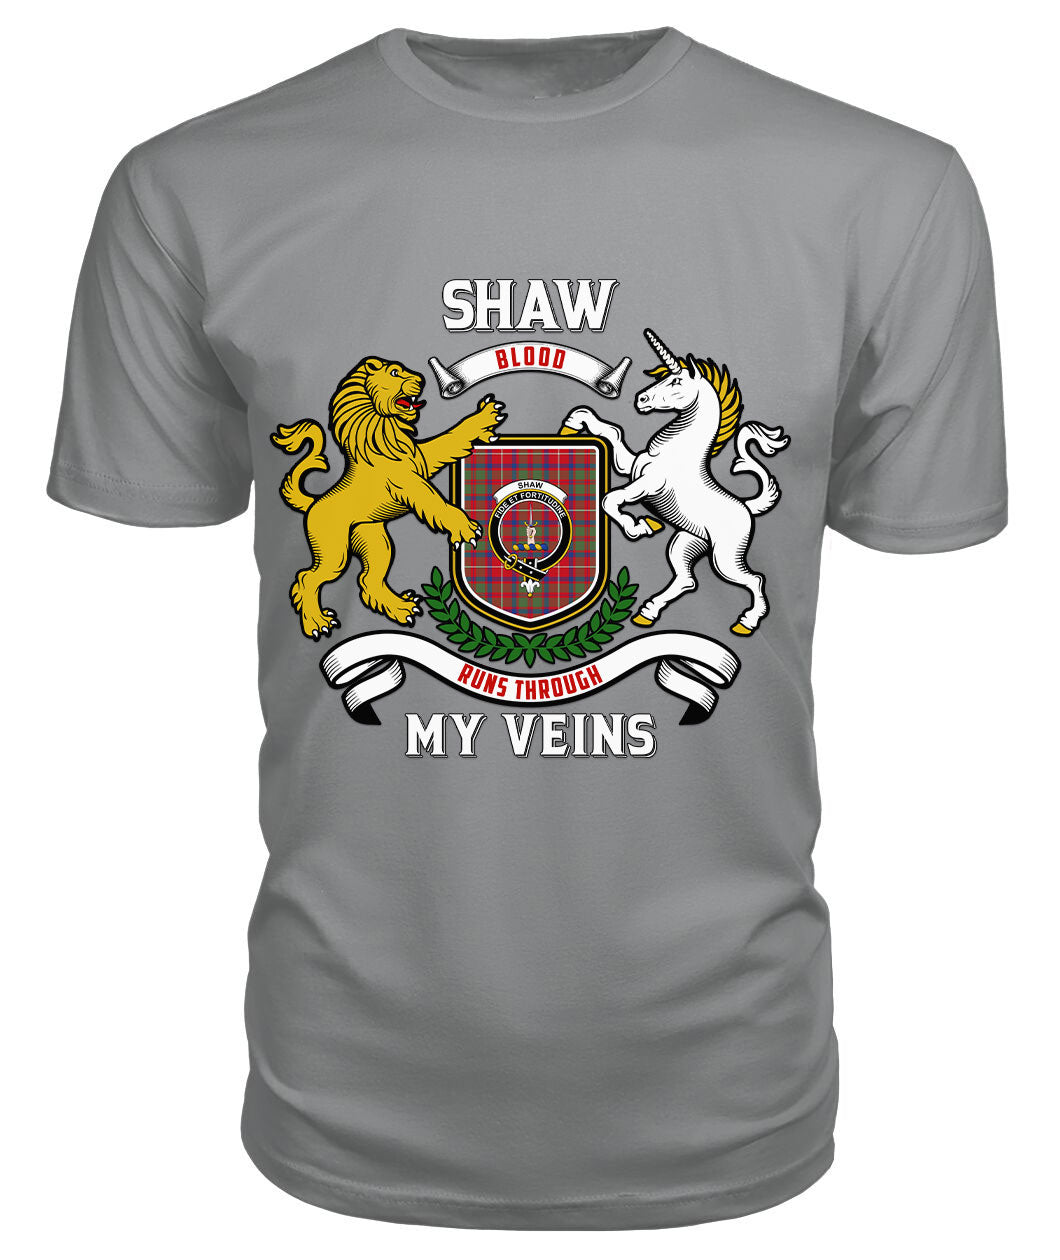 Shaw Red Modern Tartan Crest 2D T-shirt - Blood Runs Through My Veins Style